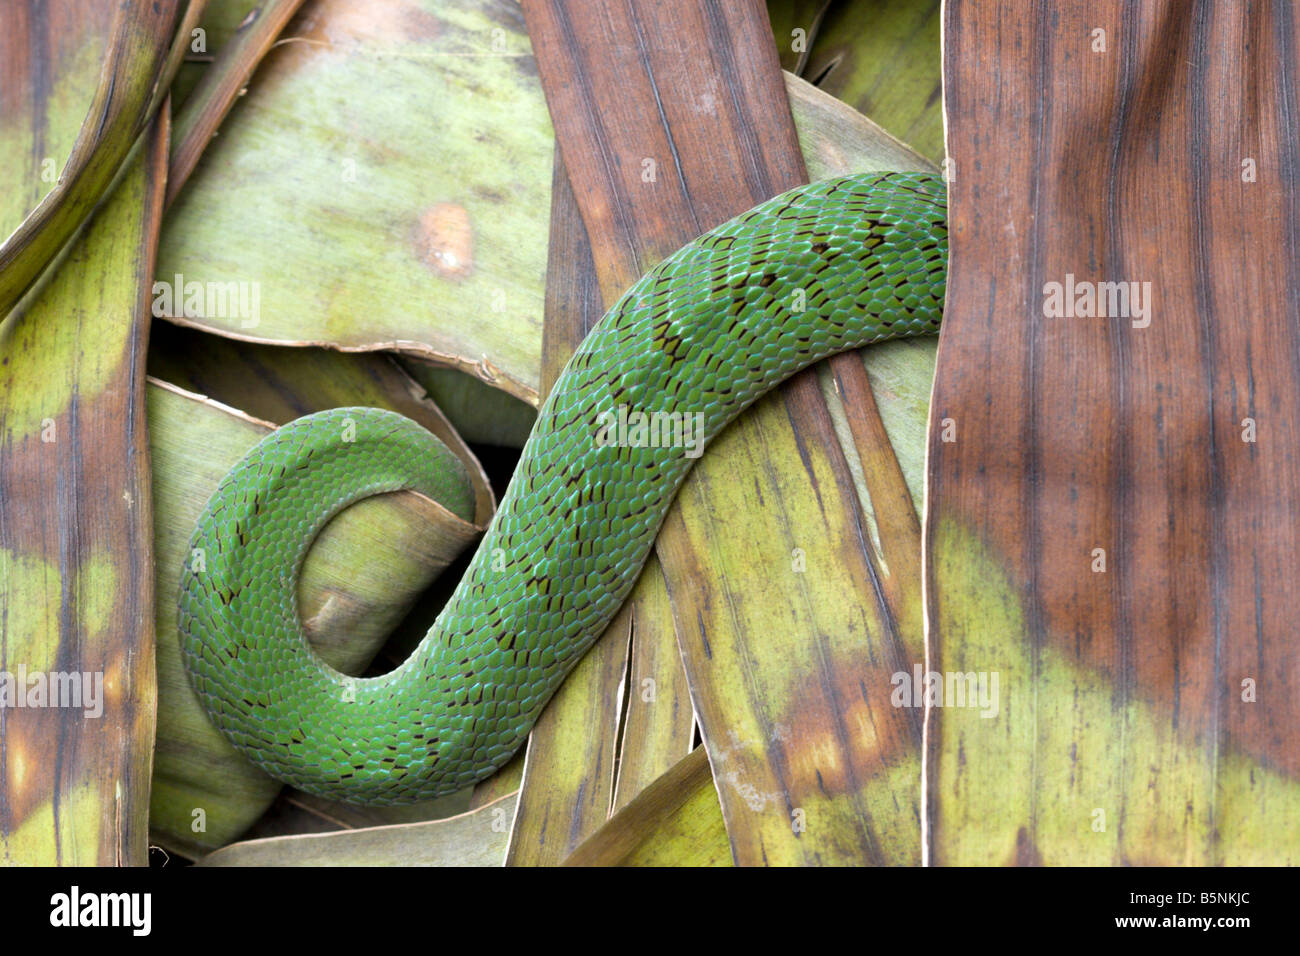 Nuit vert serpent vert vipère venimeuse Afrique Ouganda viper Banque D'Images